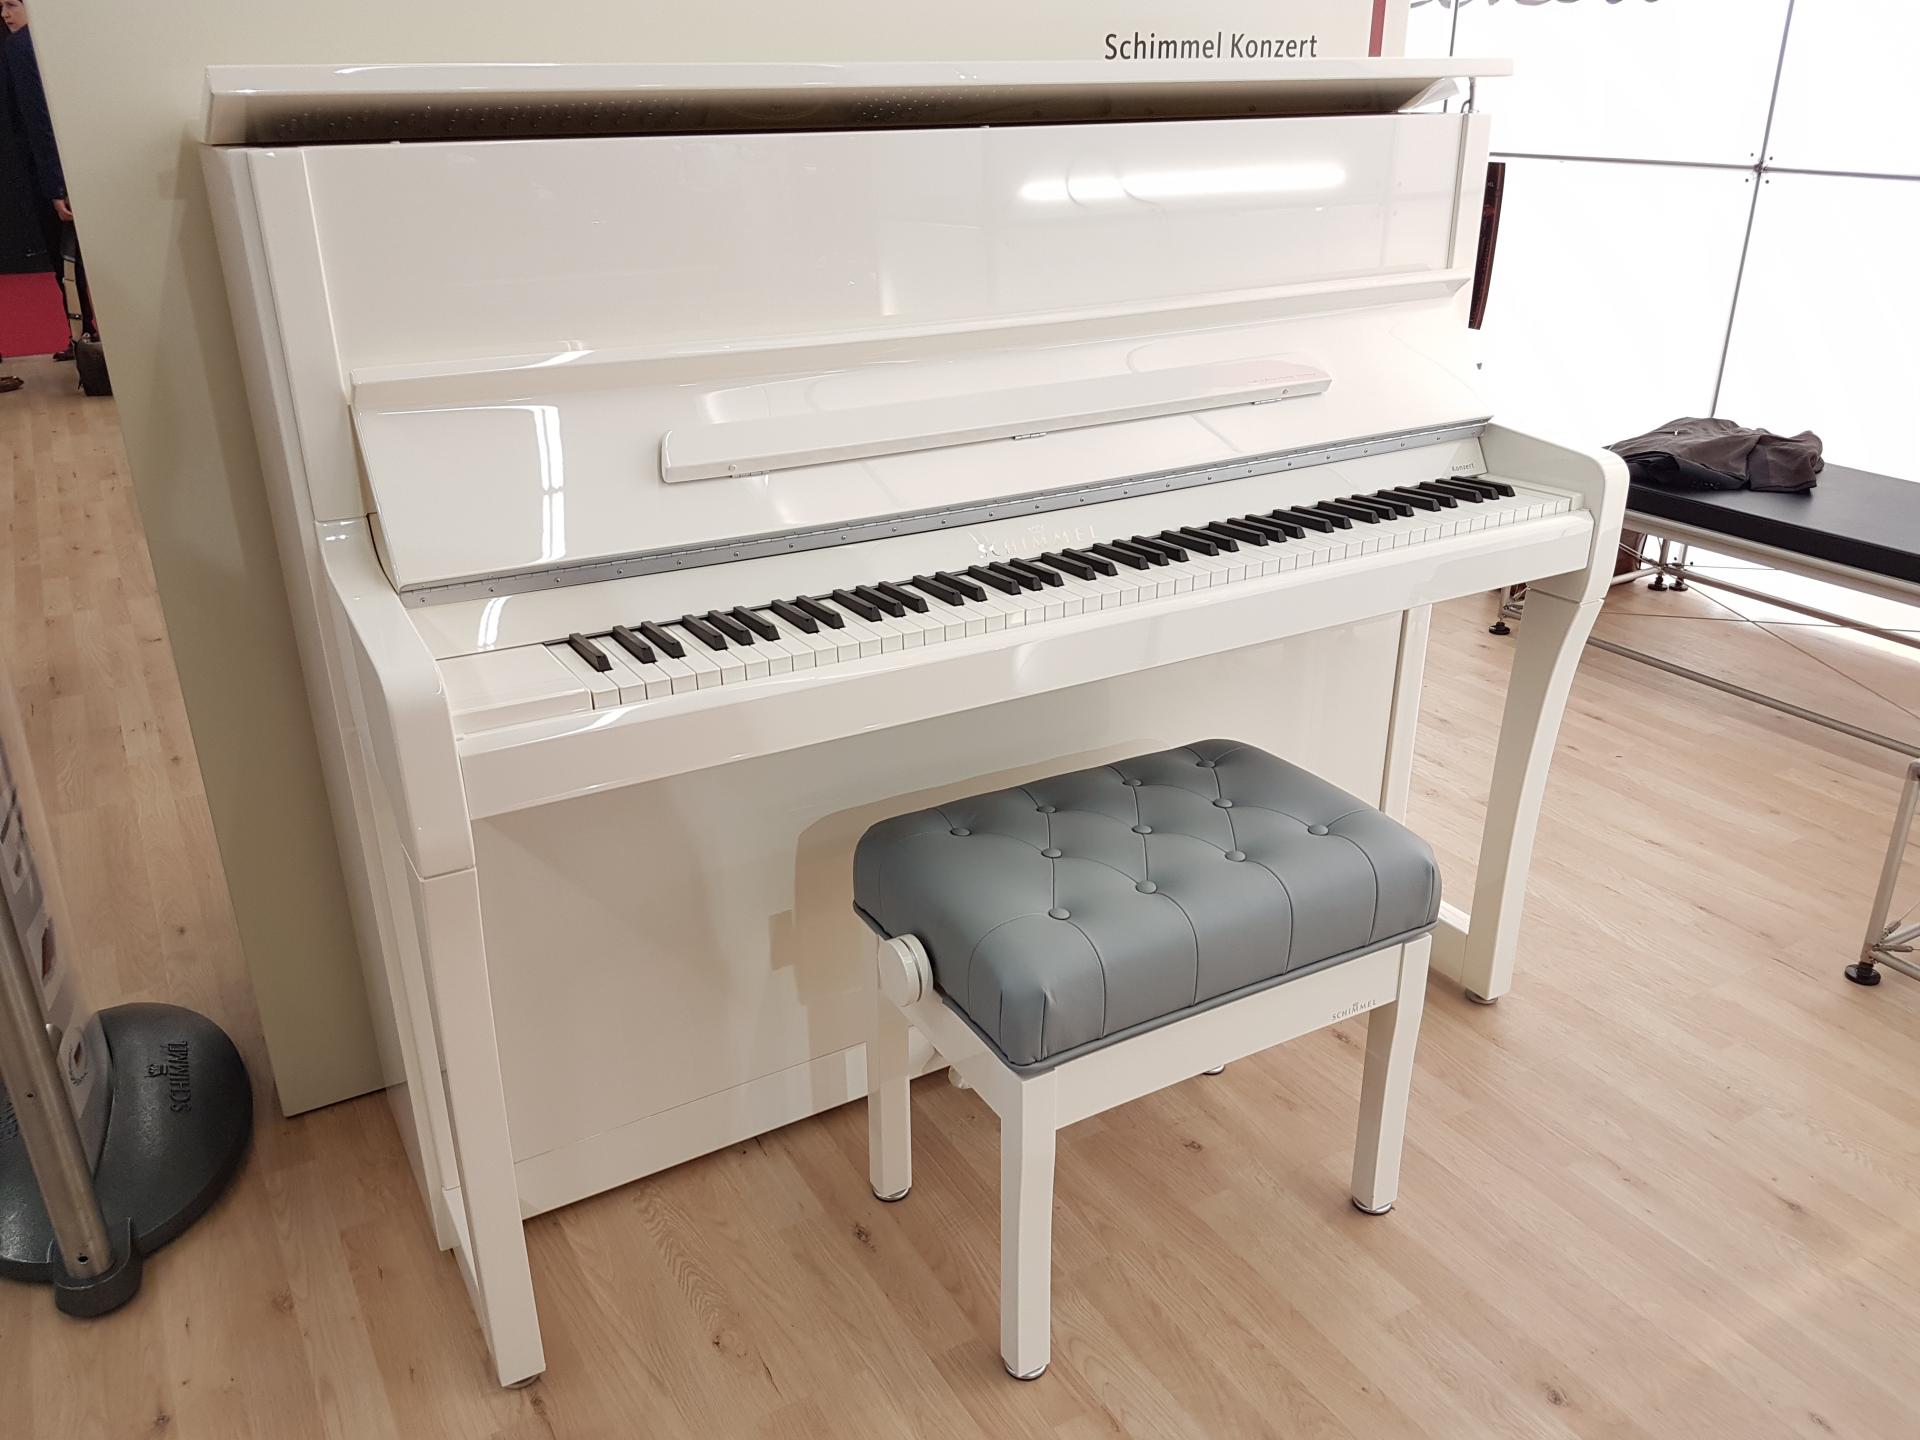 Piano droit SCHIMMEL K122-KONZERT + finition blanc GRATUIT + équipement  GRATUIT : Système TWINTONE-CASQUE